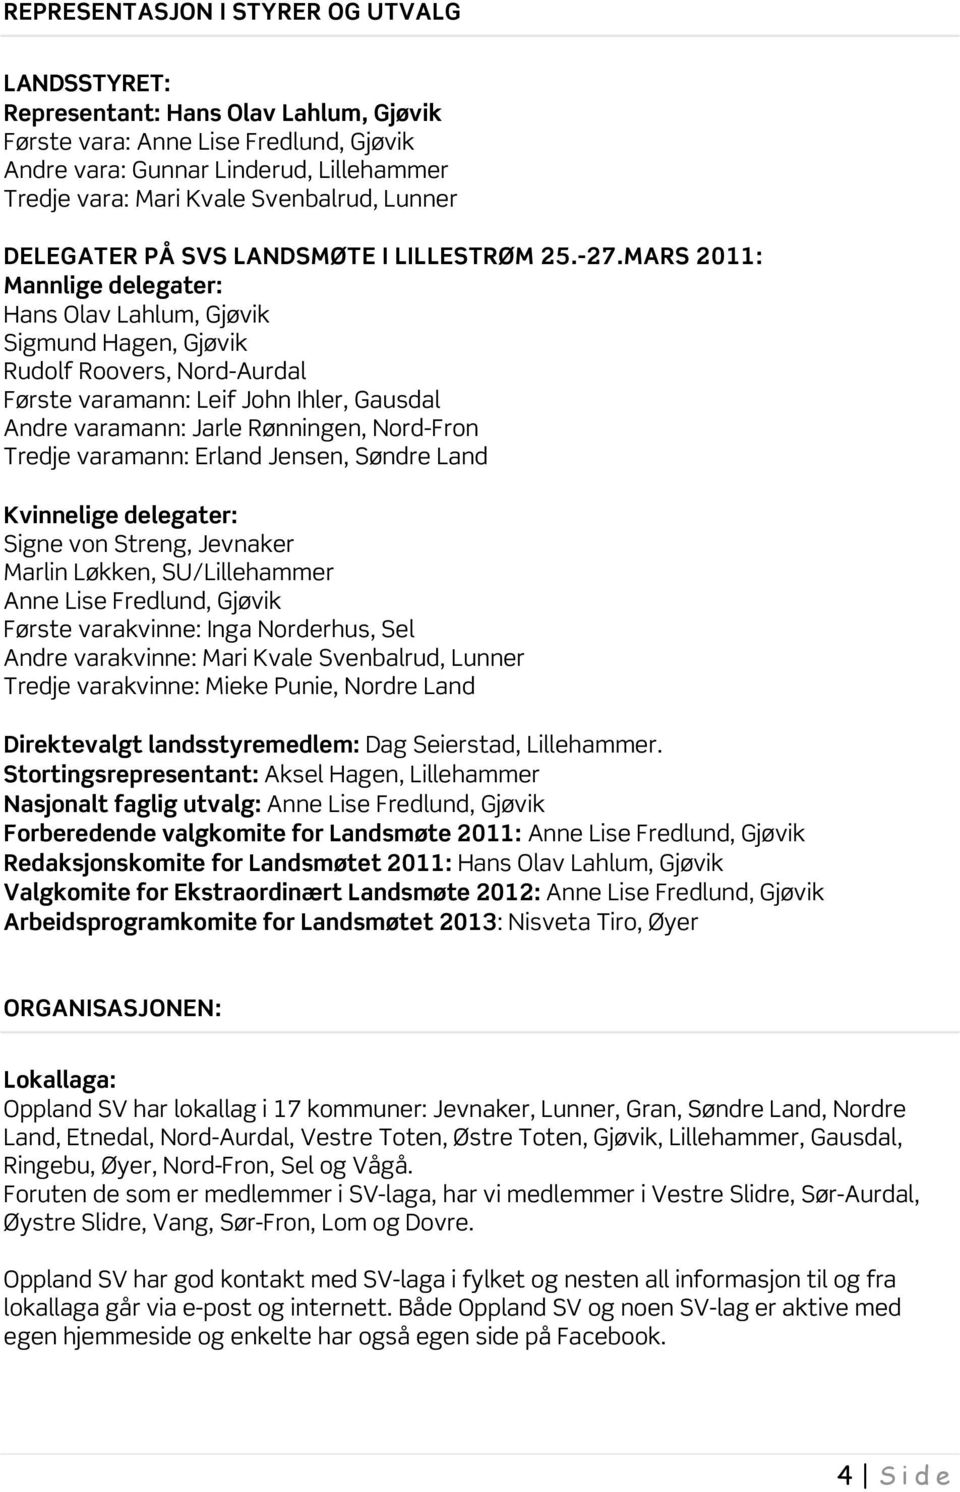 MARS 2011: Mannlige delegater: Hans Olav Lahlum, Sigmund Hagen, Rudolf Roovers, Nord-Aurdal Første varamann: Leif John Ihler, Gausdal Andre varamann: Jarle Rønningen, Nord-Fron Tredje varamann: